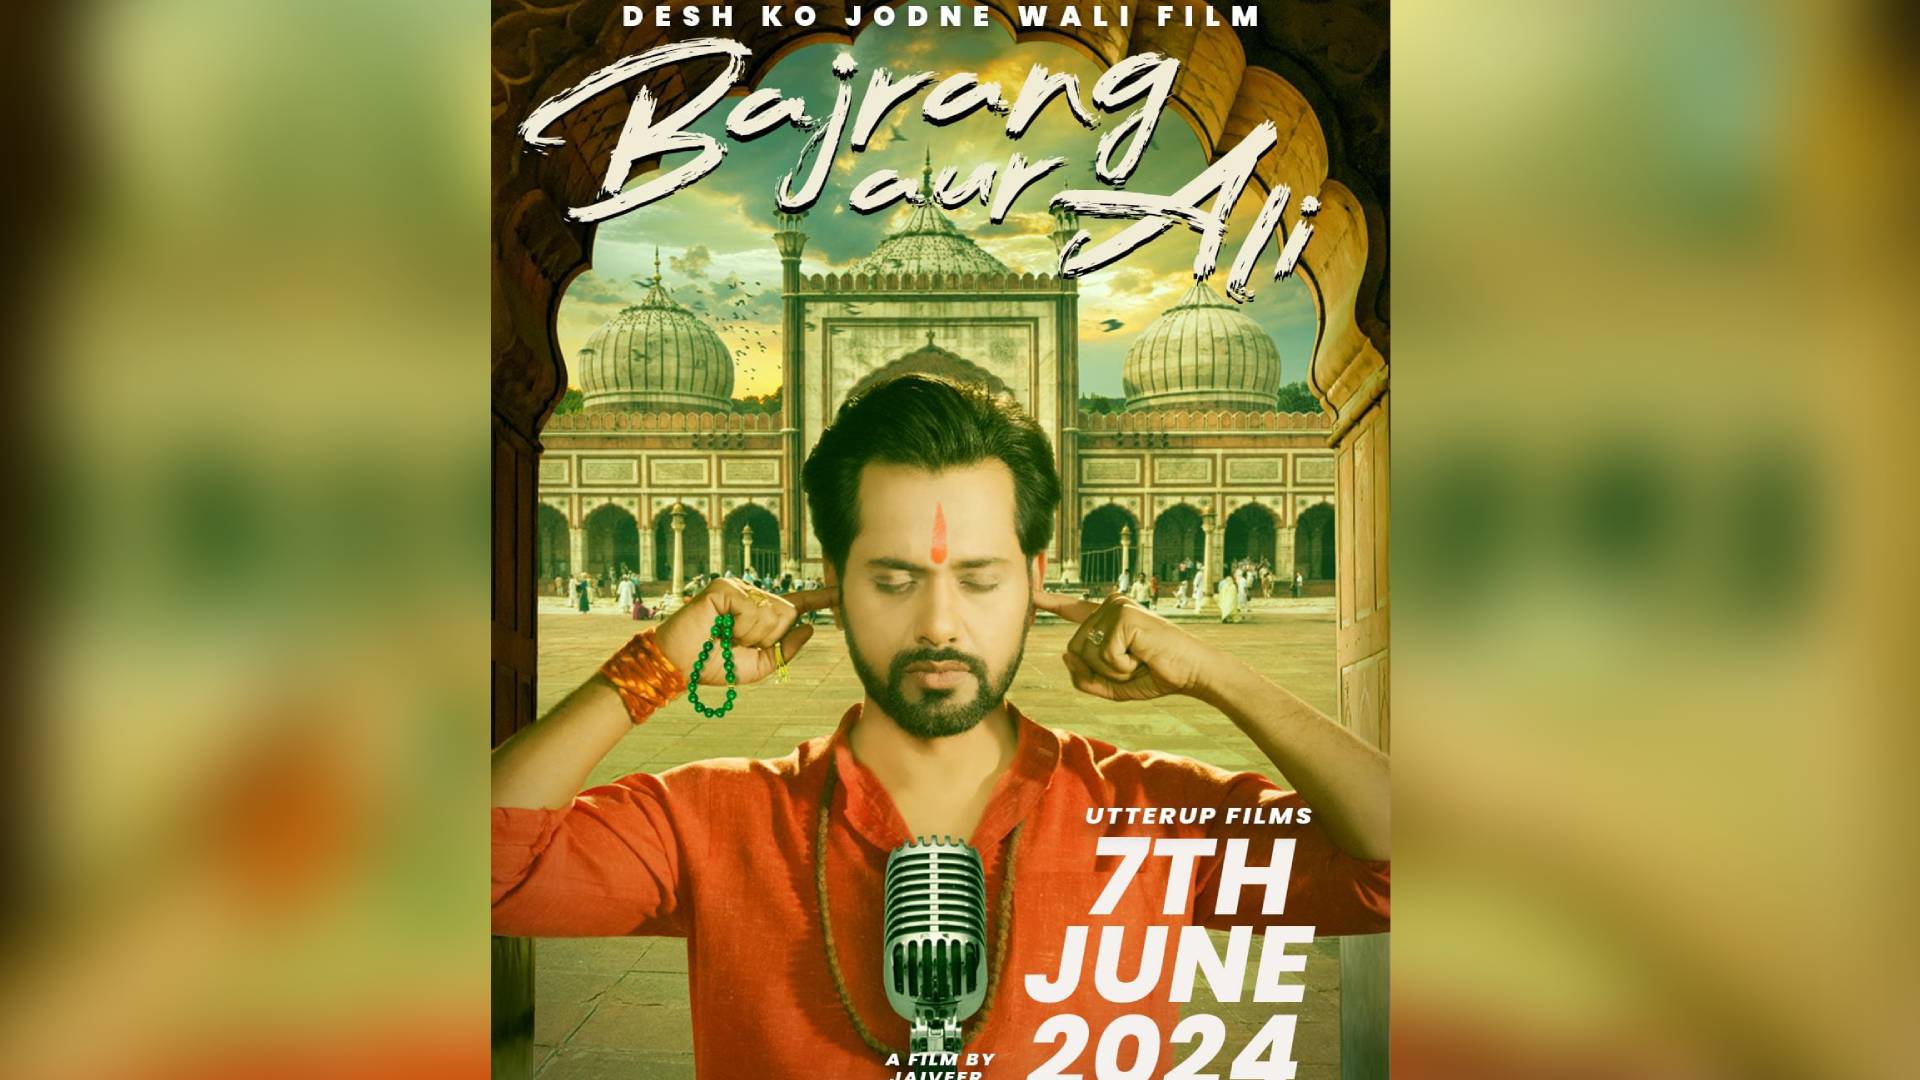 Bajrang Aur Ali: A Unique Tale of Friendship and Bonding Premieres on June 7th